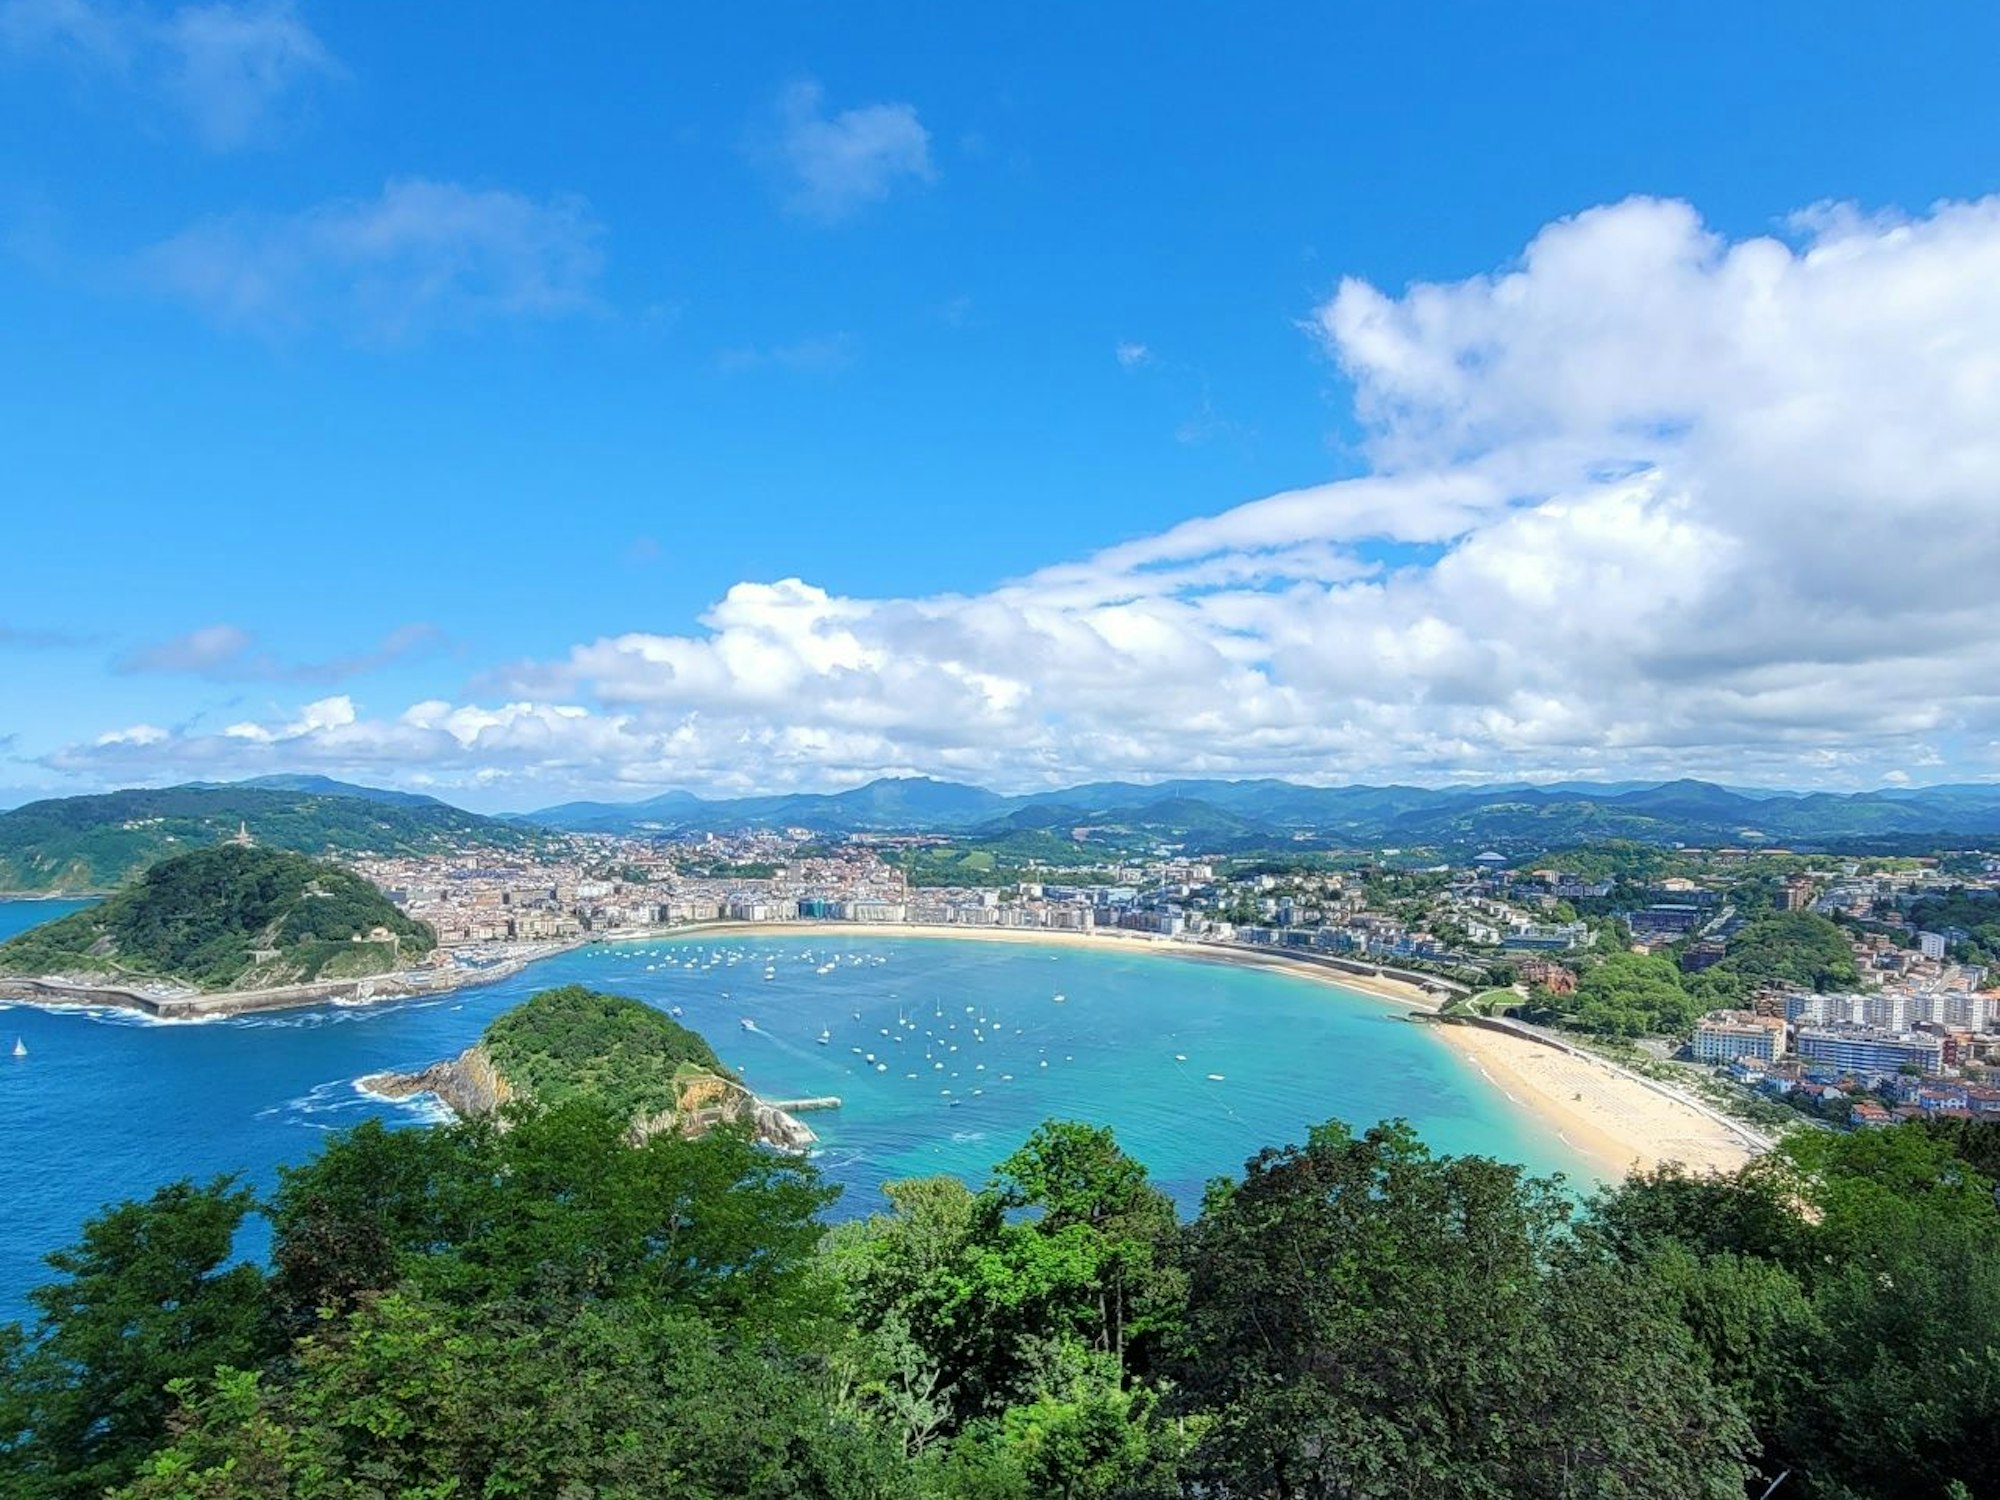 Blick vom Igueldo aus auf die Bucht vor San Sebastián mit dem breiten weißen Sandstrand von La Concha.